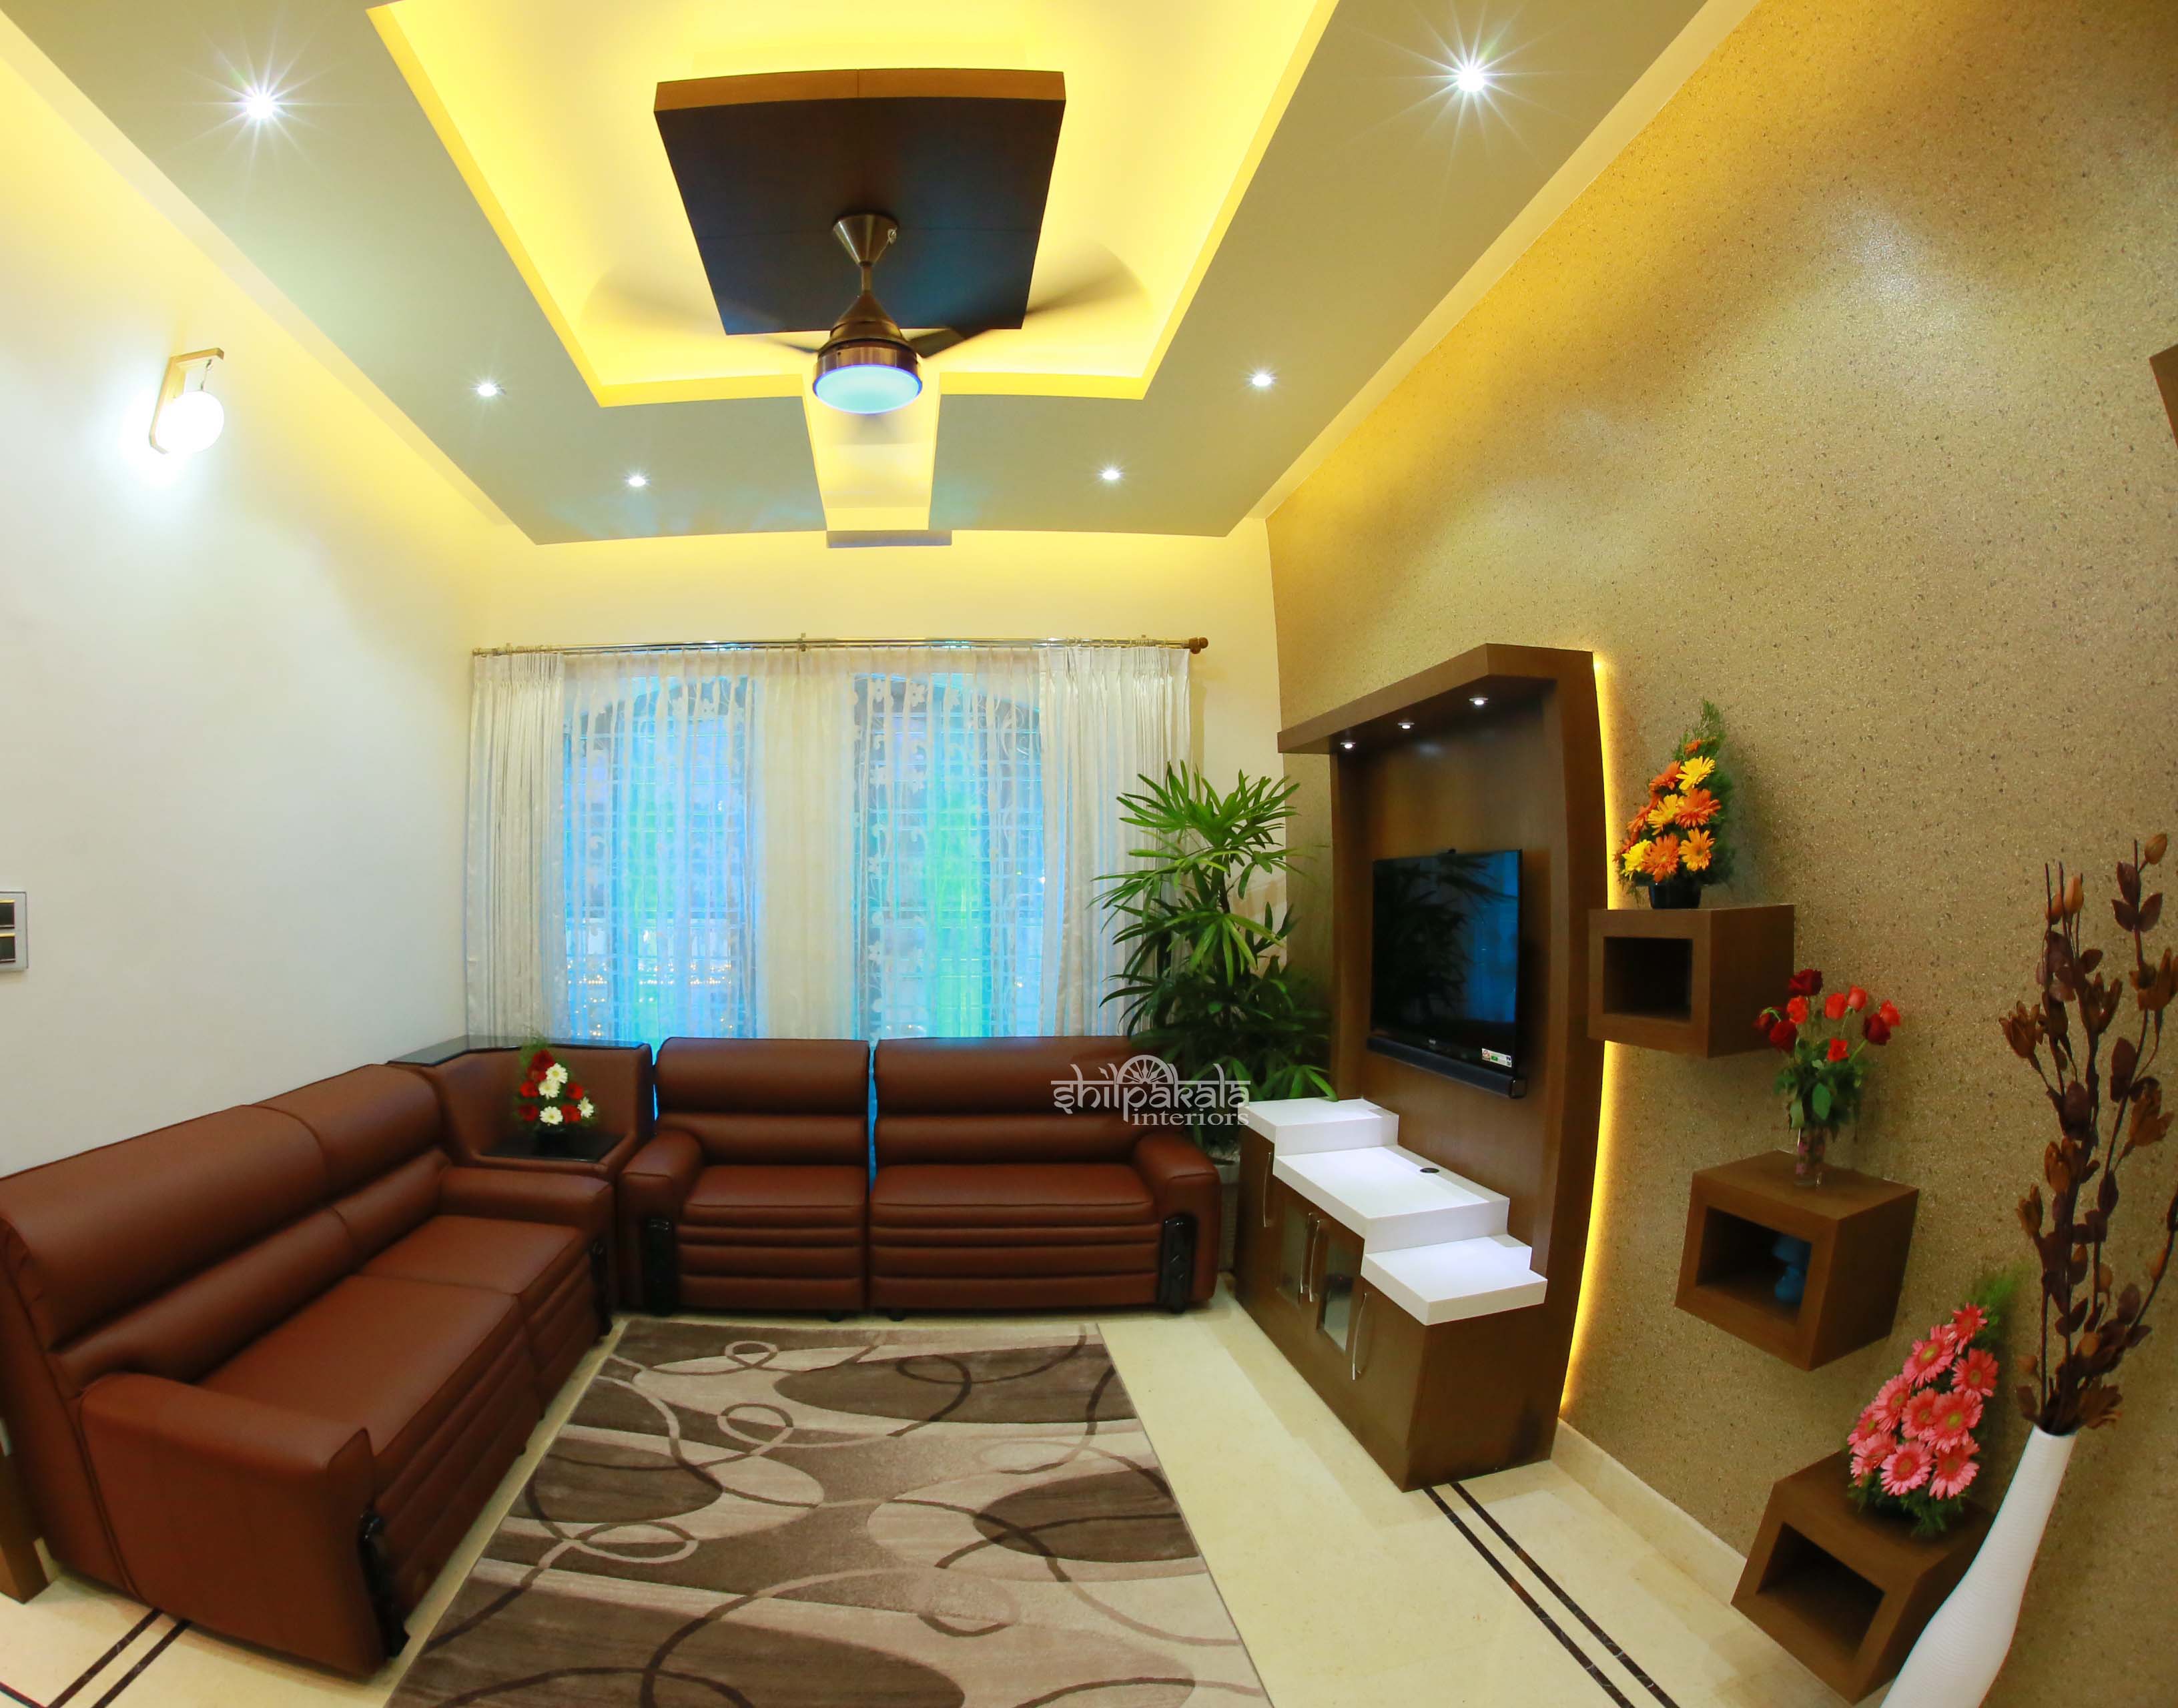  Home Interior Design Ideas Kerala for Living room